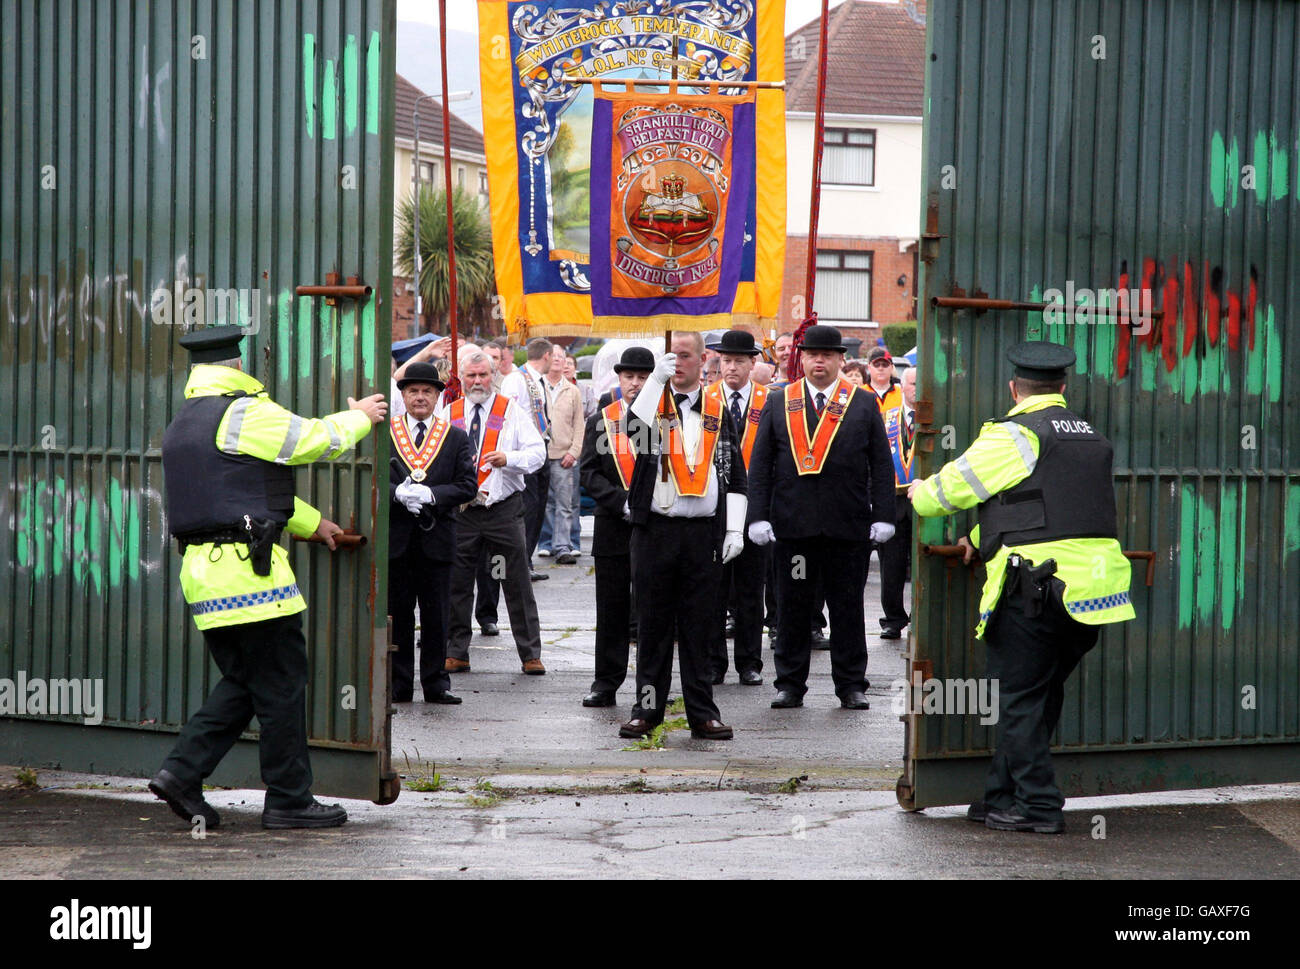 Polizeibeamte des nordirischen Polizeidienstes öffnen in der Workman Avenue im Westen von Belfast, Nordirland, das Tor für den Orange Order. Stockfoto